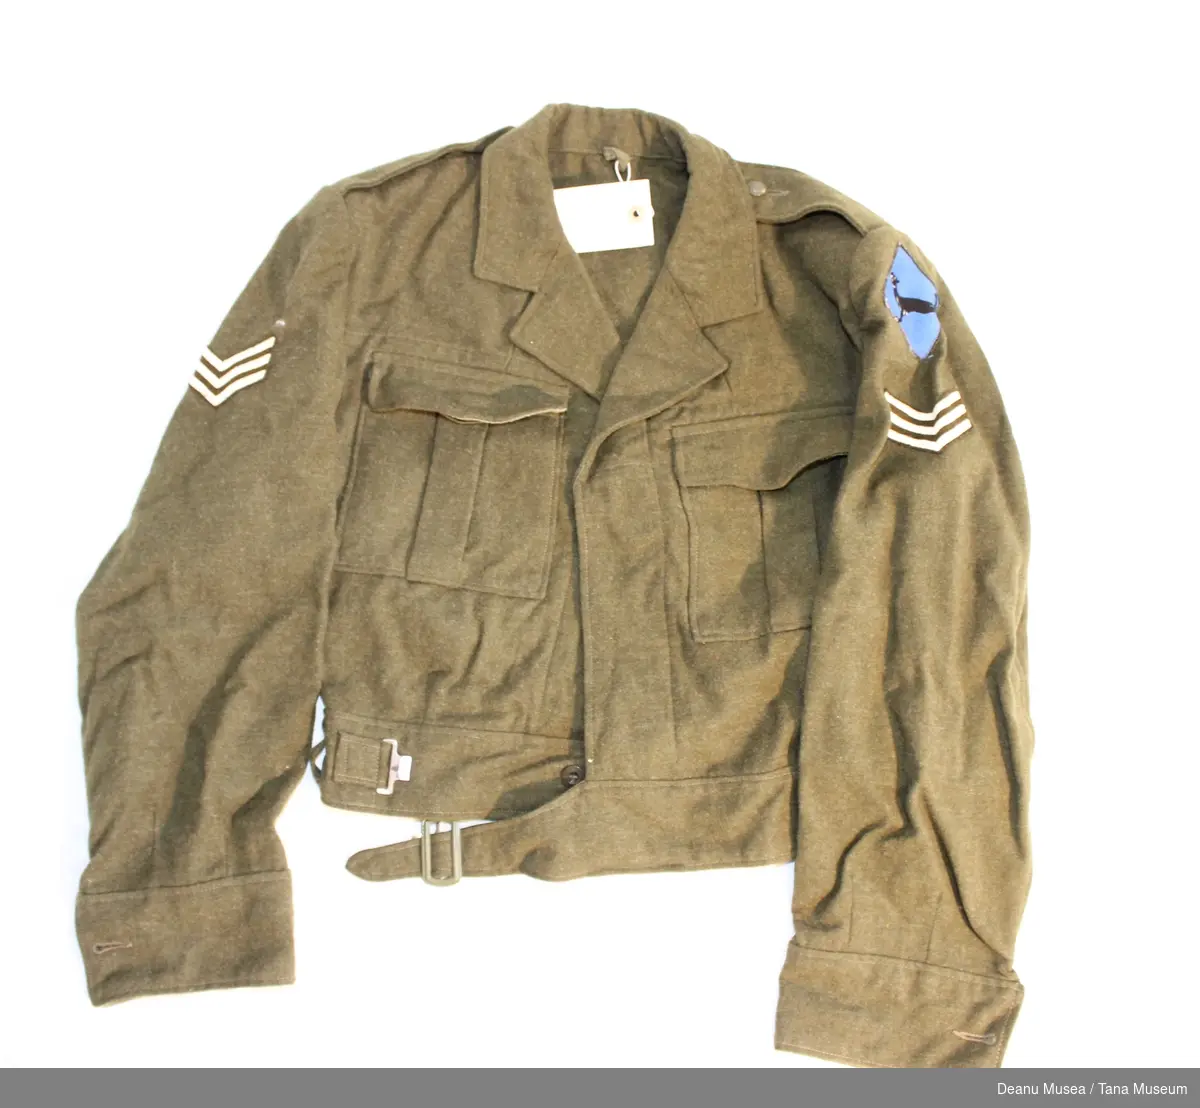 Uniformsjakke i vadmel med sersjant distinksjoner på skuldrene samt Varanger bataljonens emblem på den ene skulderen.